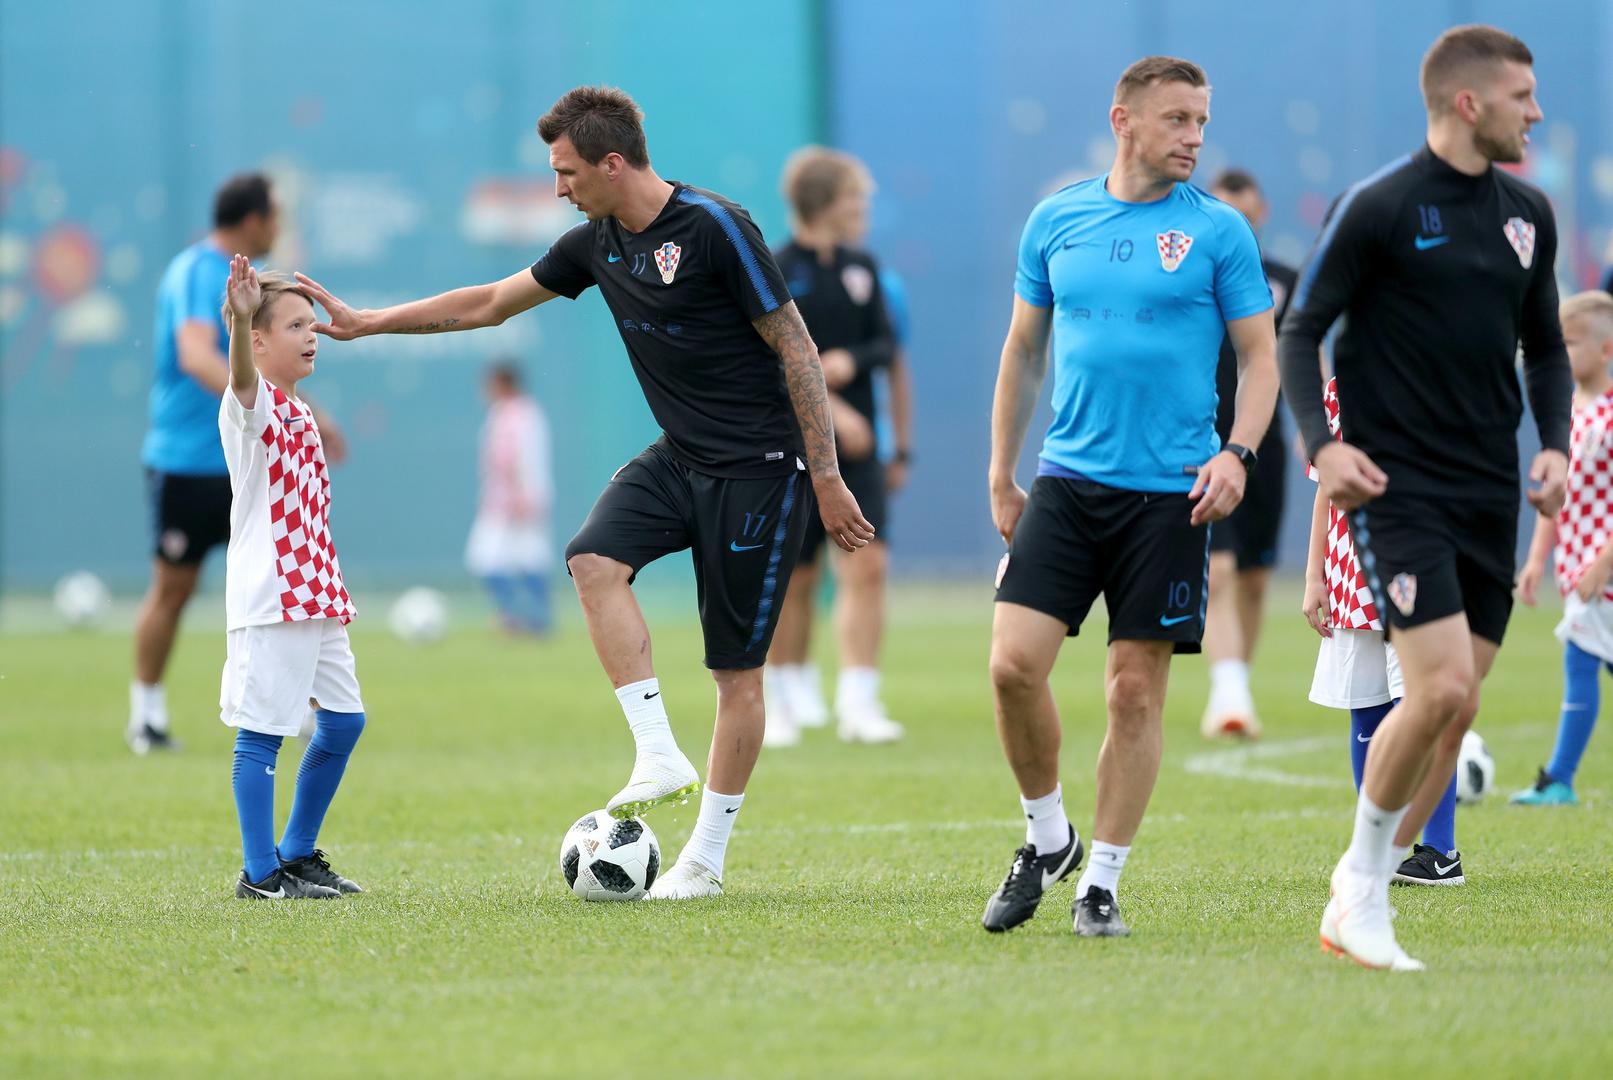 Hrvatska nogometna reprezentacija nakon što se smjestila u svoj kamp u Iličevu u Zelenogorsku i kraćeg odmora krenula je s popodnevnim aktivnostima